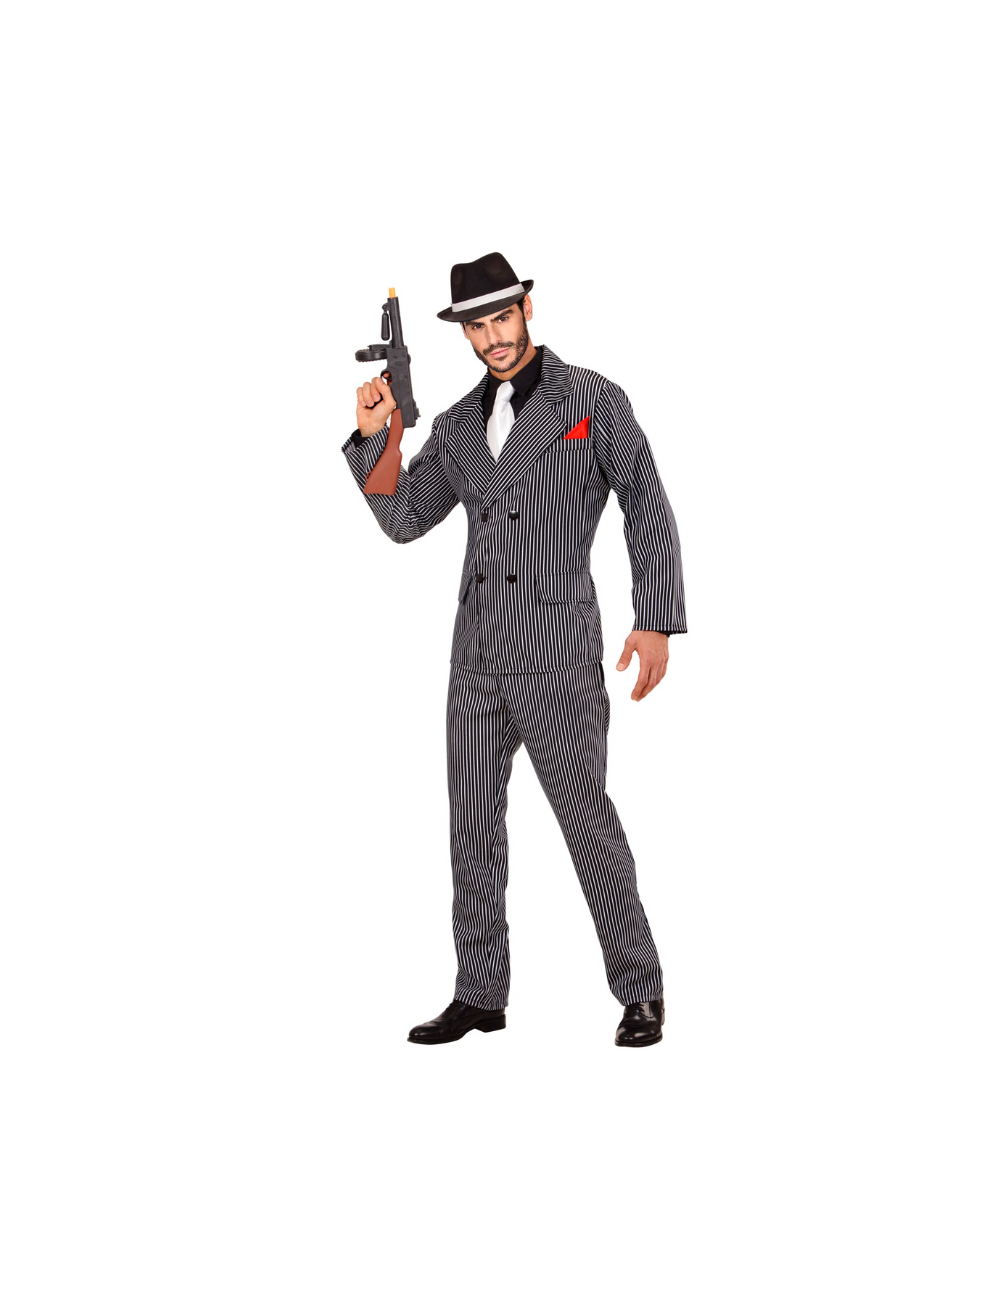 Gilet homme années 1920 accessoires costume gangster Gatsby accessoires  noir moyen